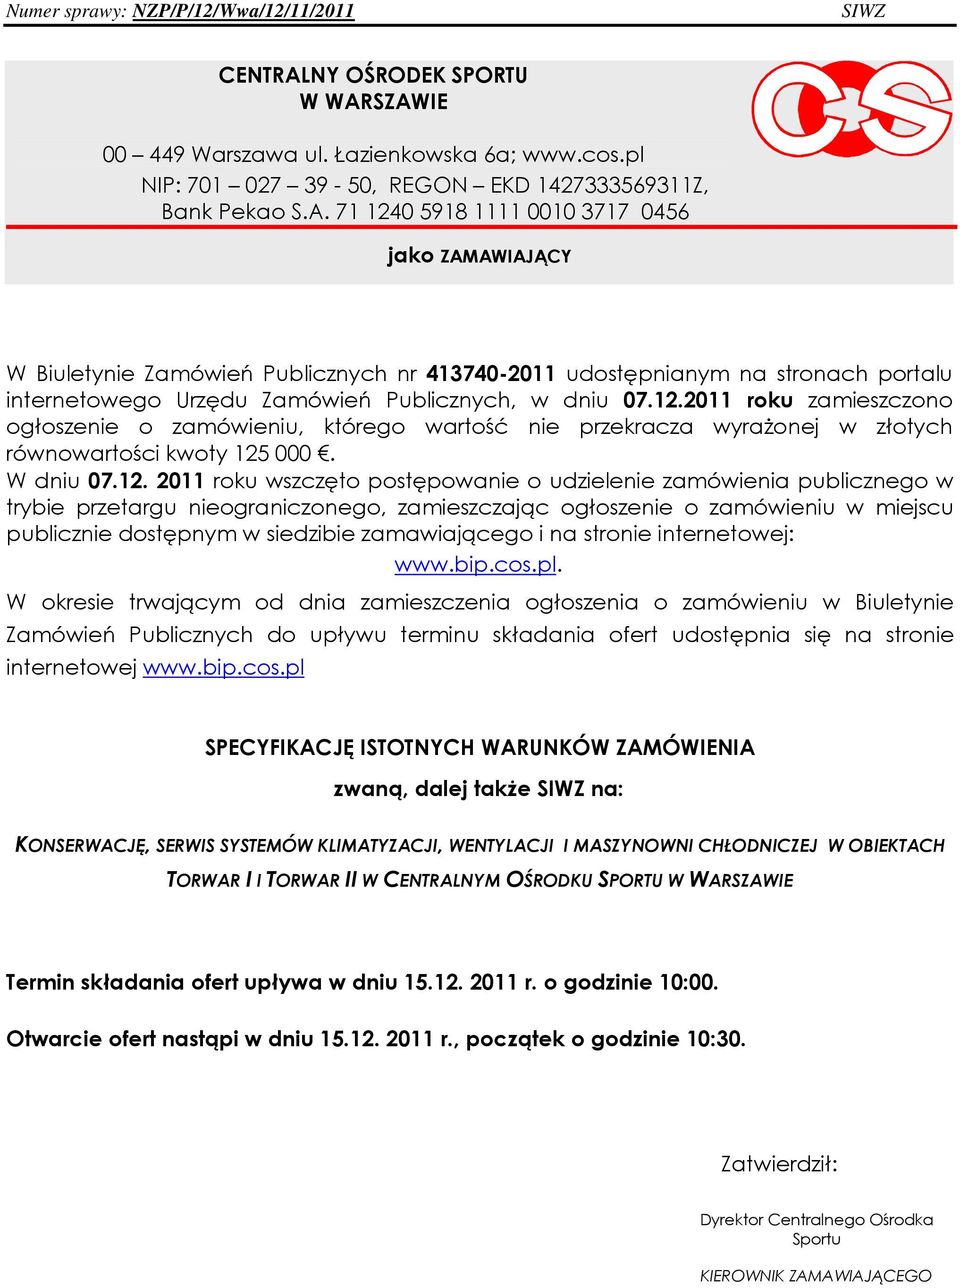 zamówienia publicznego w trybie przetargu nieograniczonego, zamieszczając ogłoszenie o zamówieniu w miejscu publicznie dostępnym w siedzibie zamawiającego i na stronie internetowej: www.bip.cos.pl.